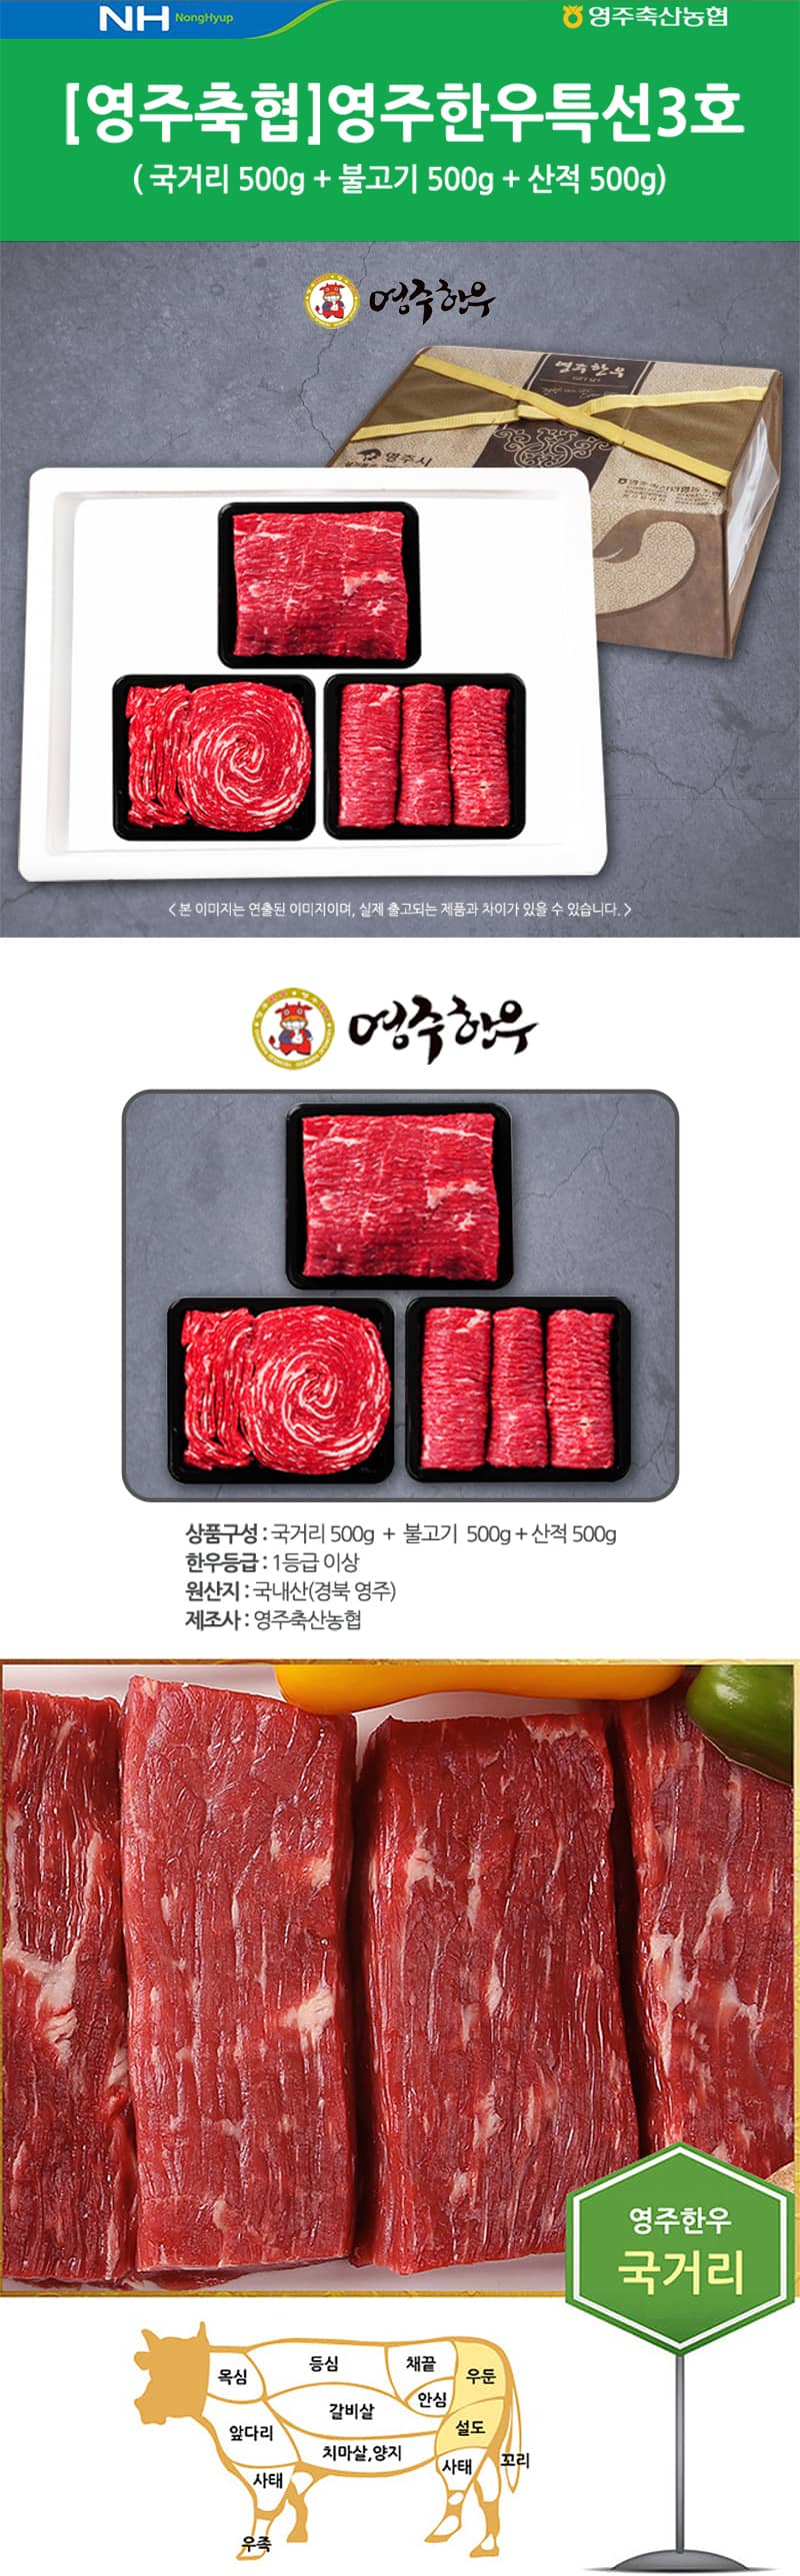 yeongjuchughyeob-yeongju_hanu_teugseon_3ho_detail_800_1.jpg